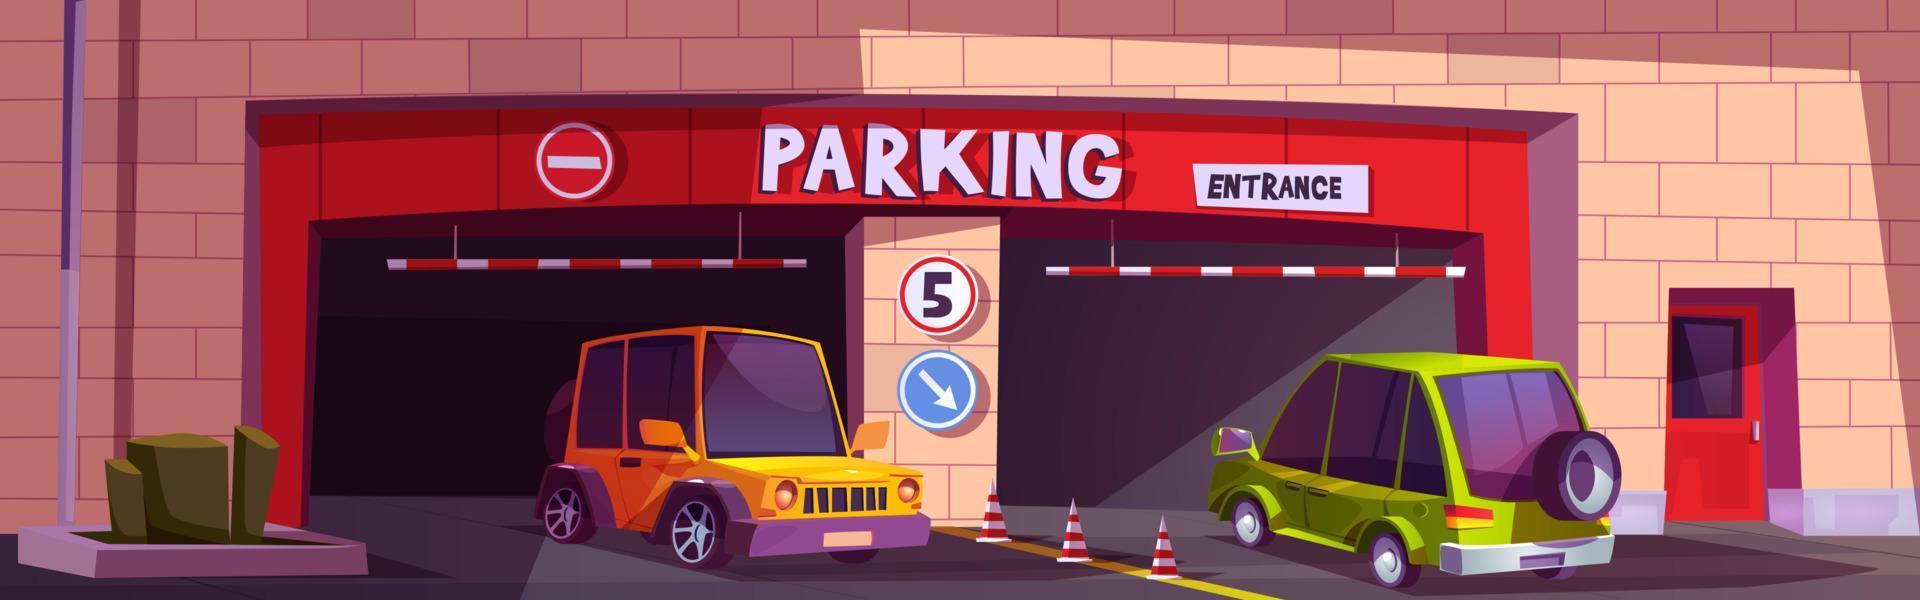 entrada de estacionamento de barreira com ilustração de carros vetor